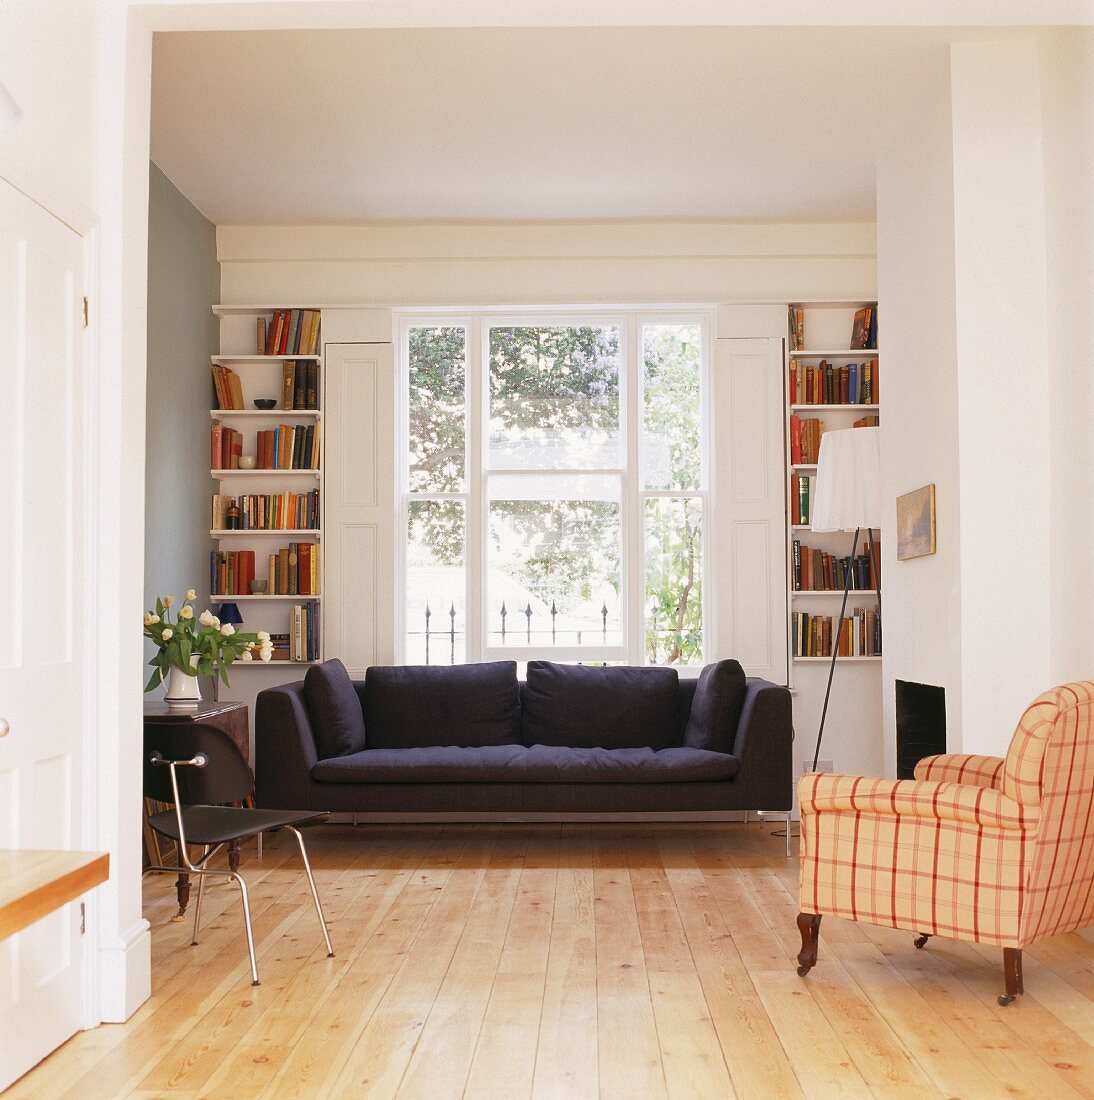 Schwarzes Sofa unter Fenster und antiker Sessel mit kariertem Bezug im offenen Wohnzimmer